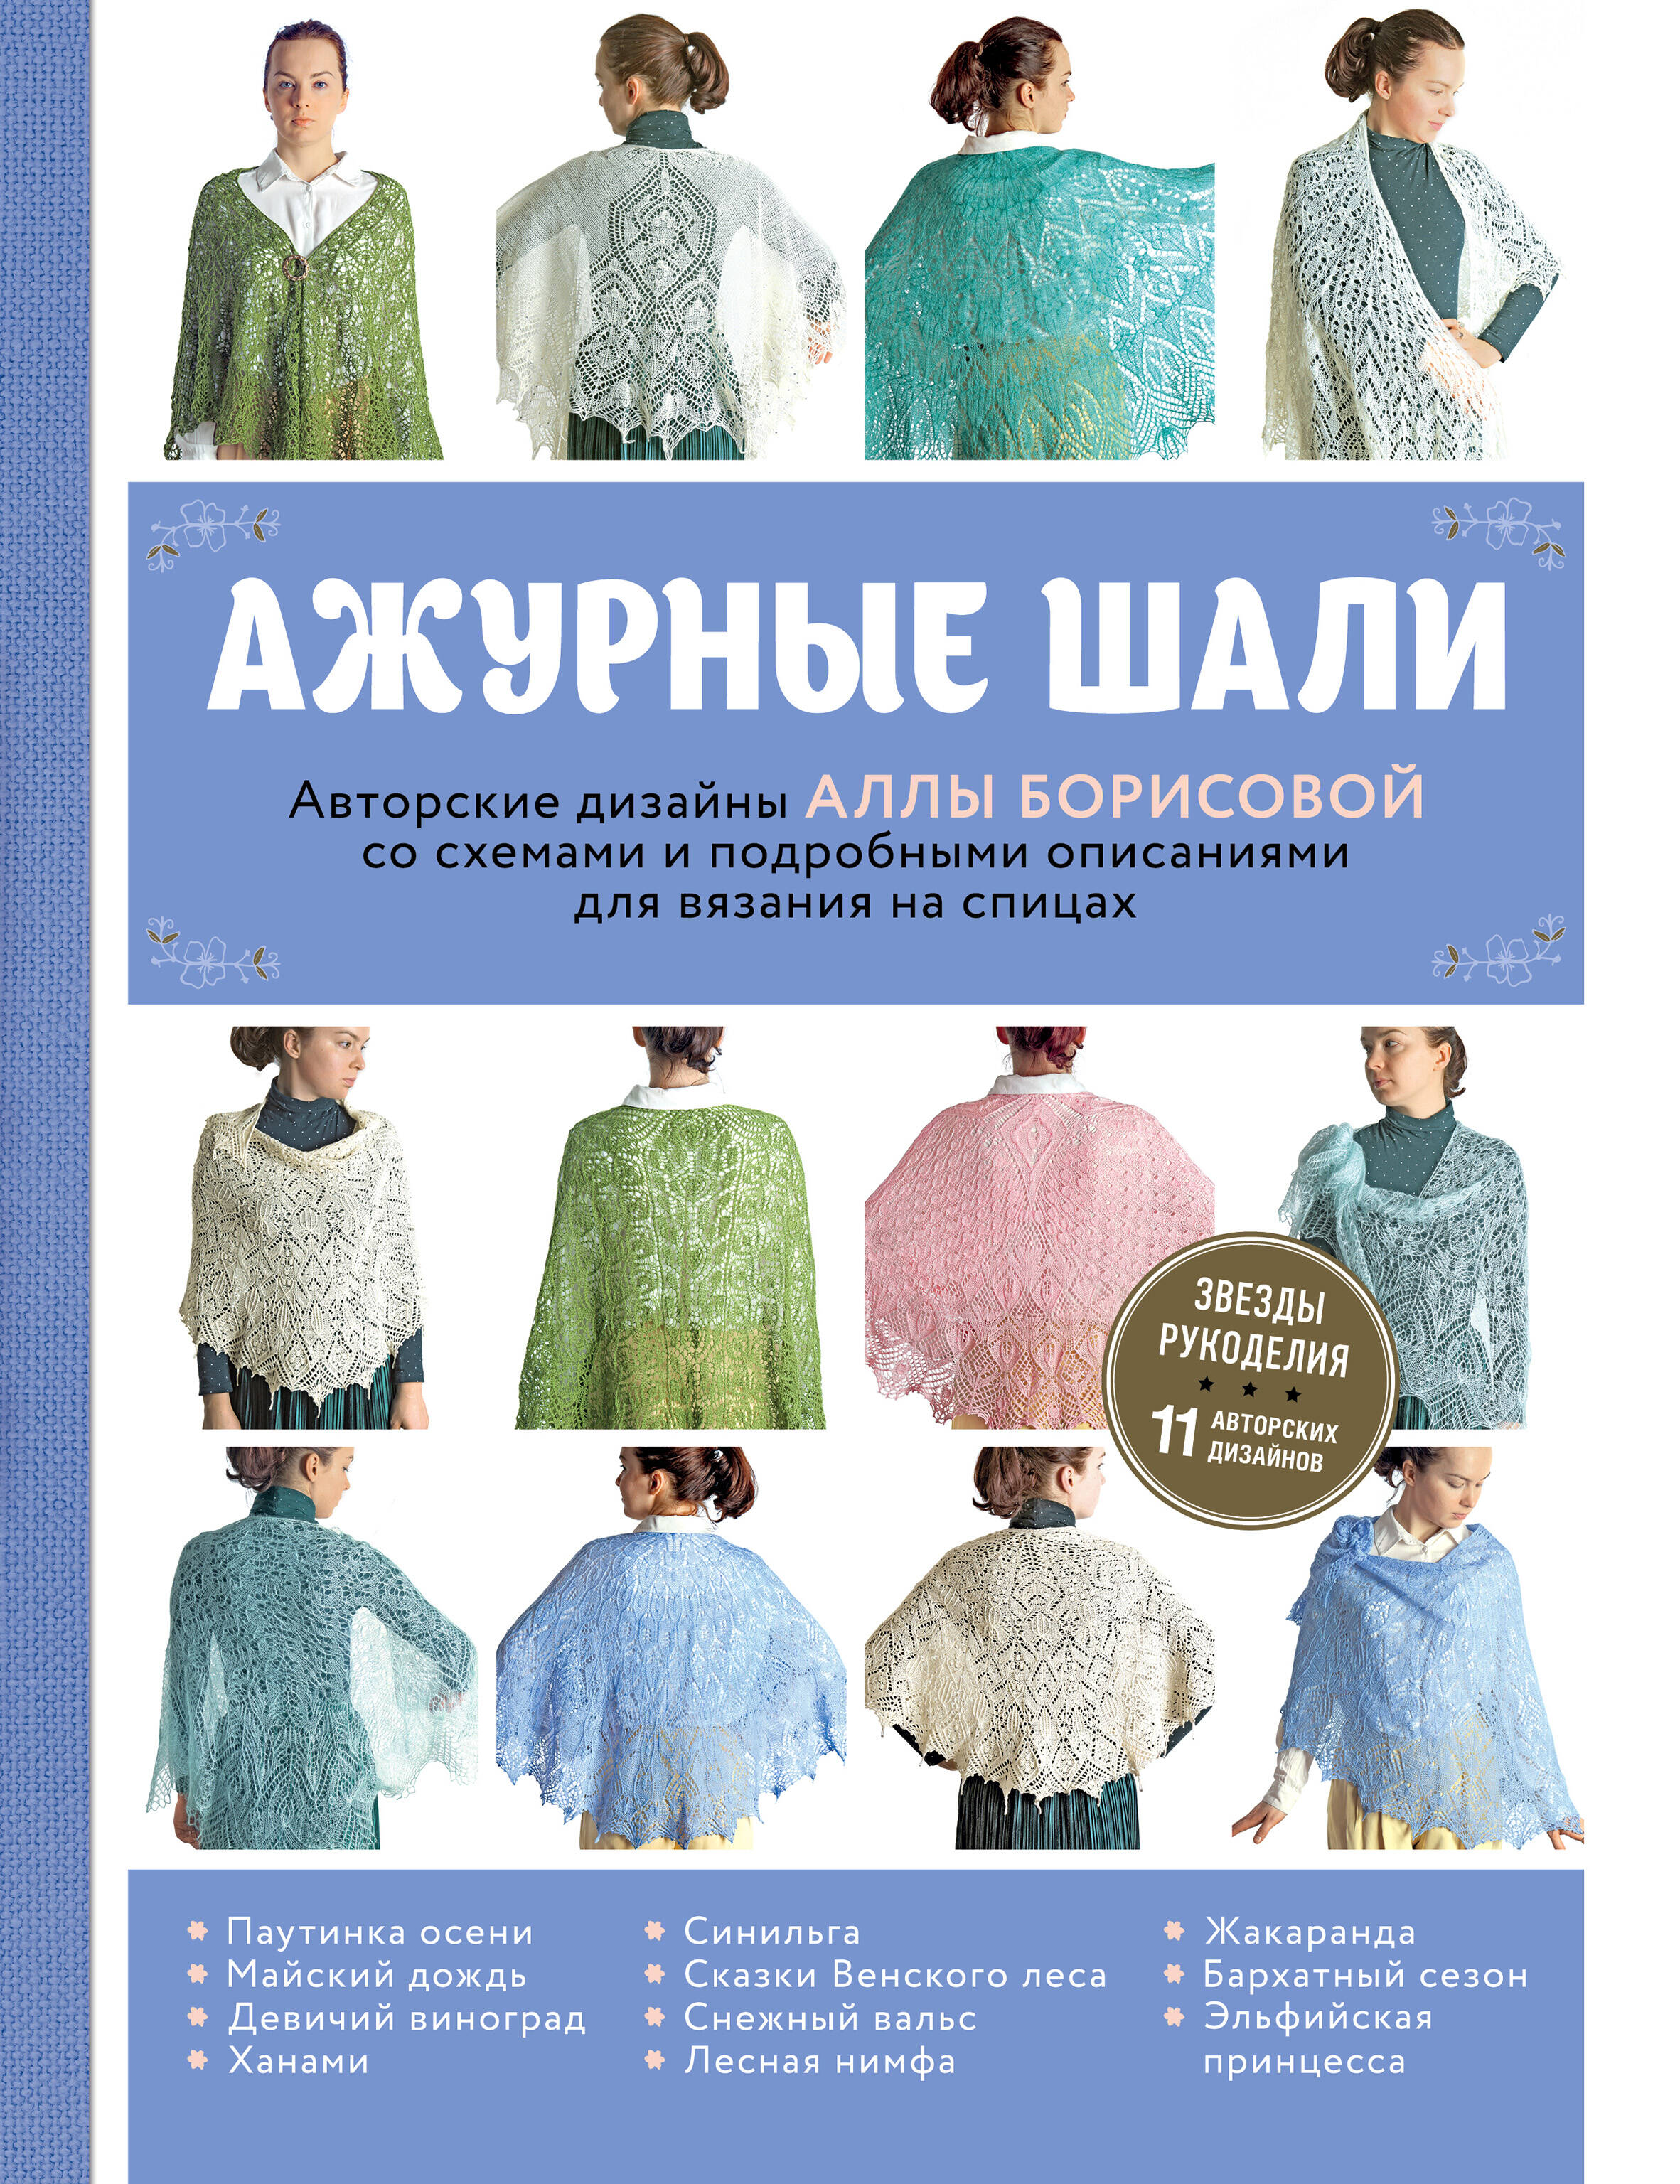 Ажурные шали. Авторские дизайны Аллы Борисовой со схемами и подробными описаниями для вязания на спицах